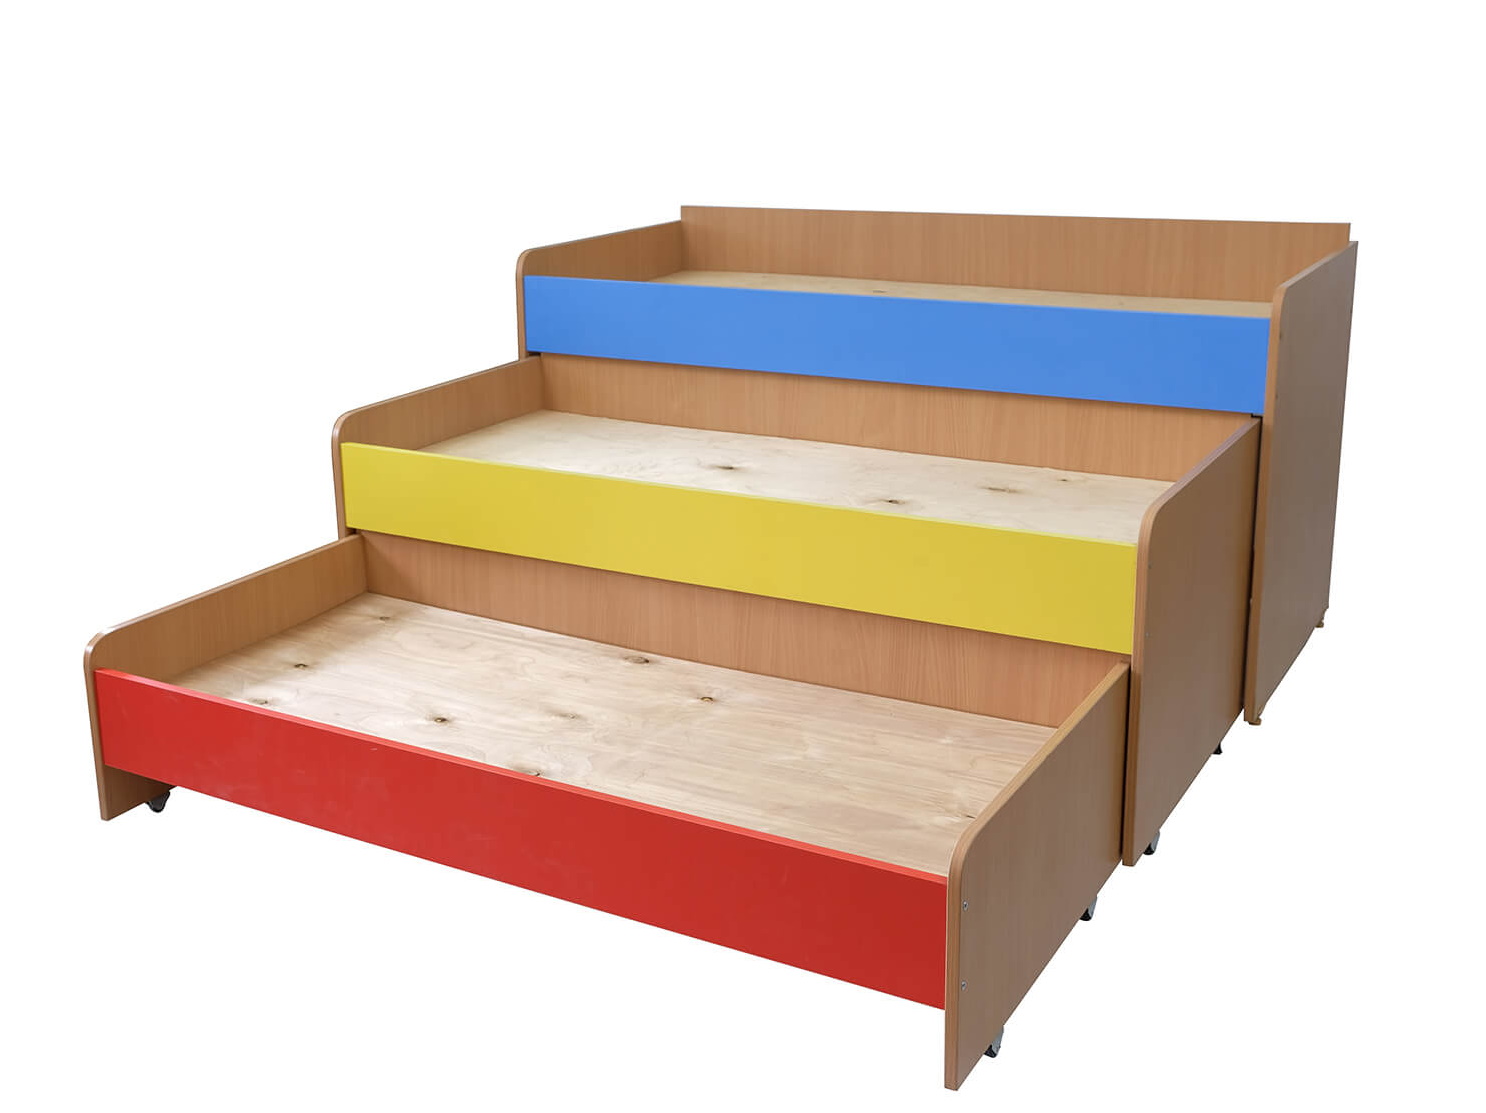 трехъярусная кровать для детей в детском саду